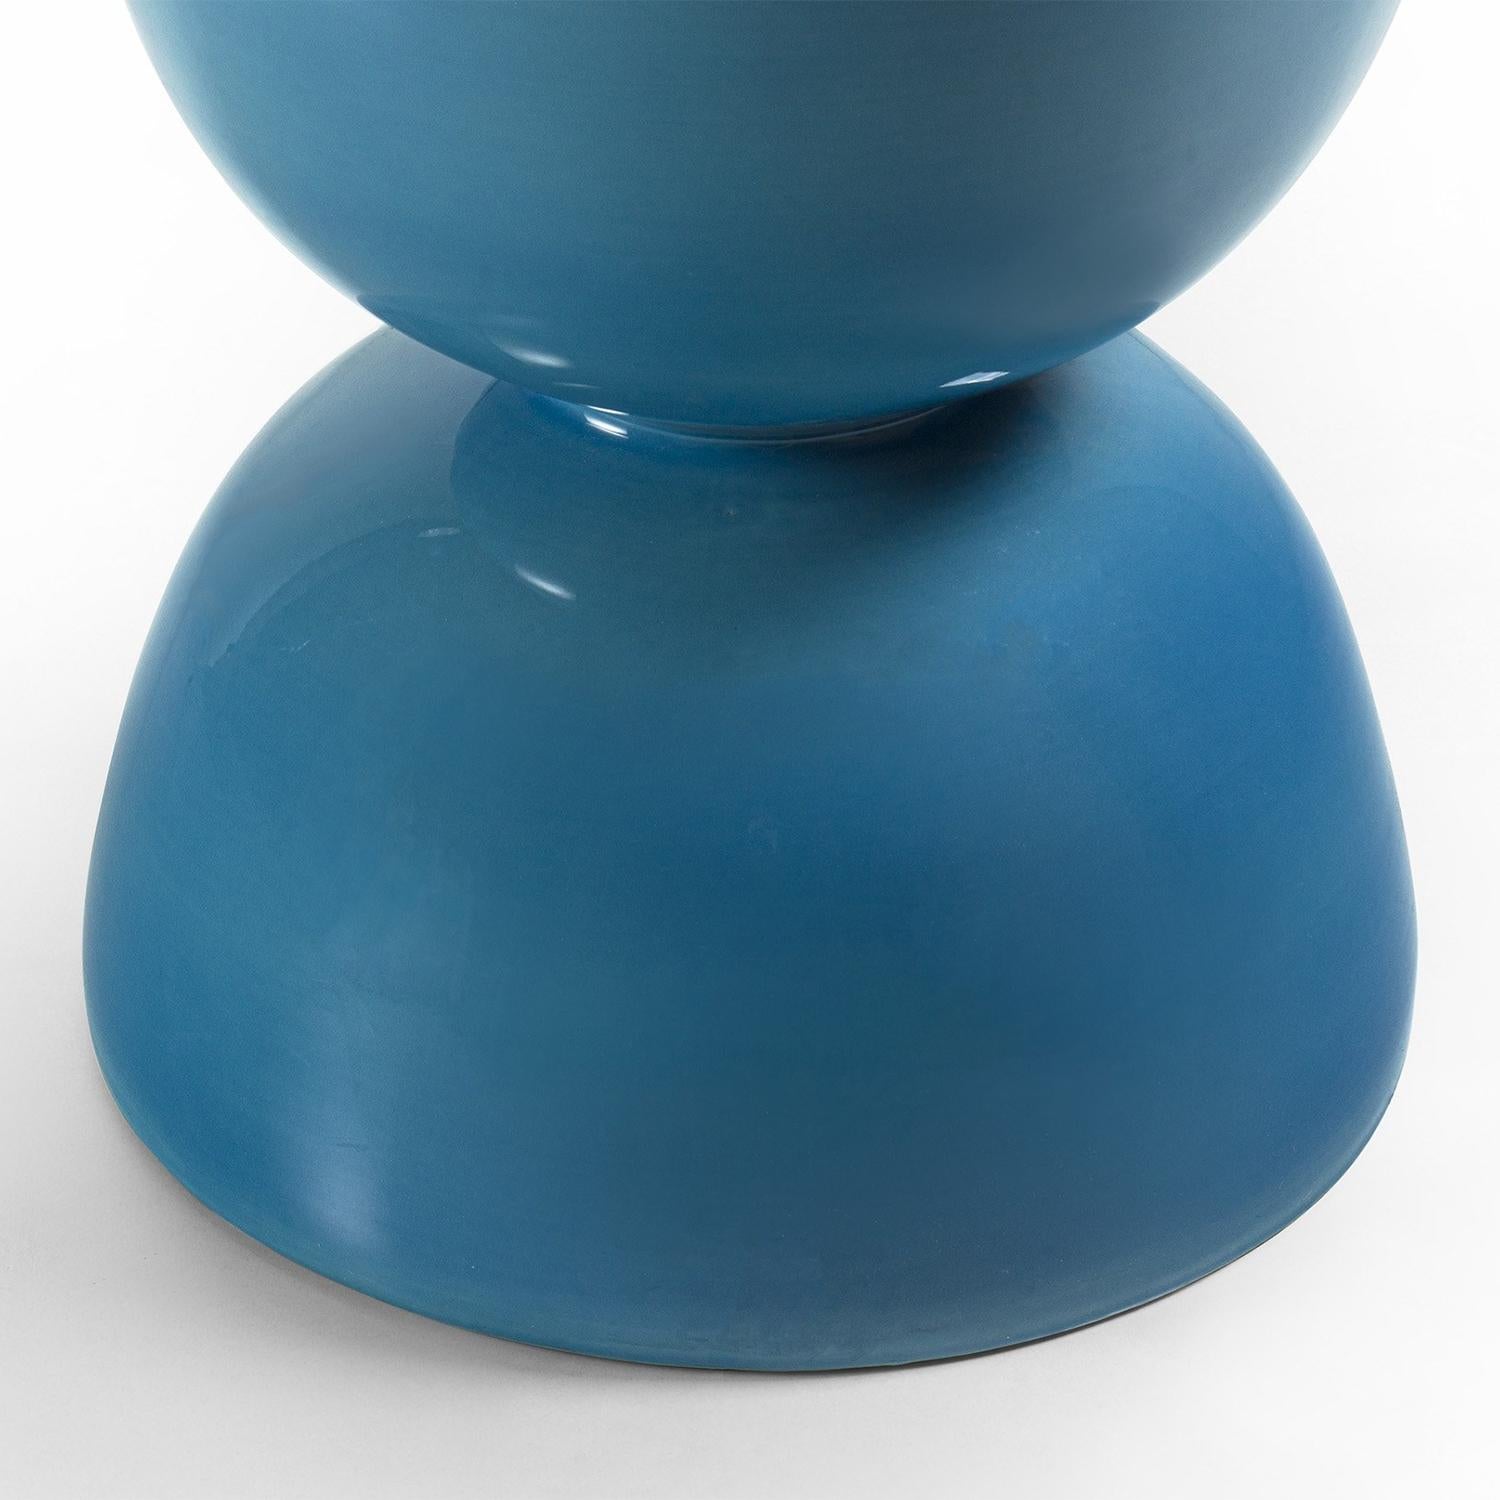 Italian Spheres Blue Stool For Sale